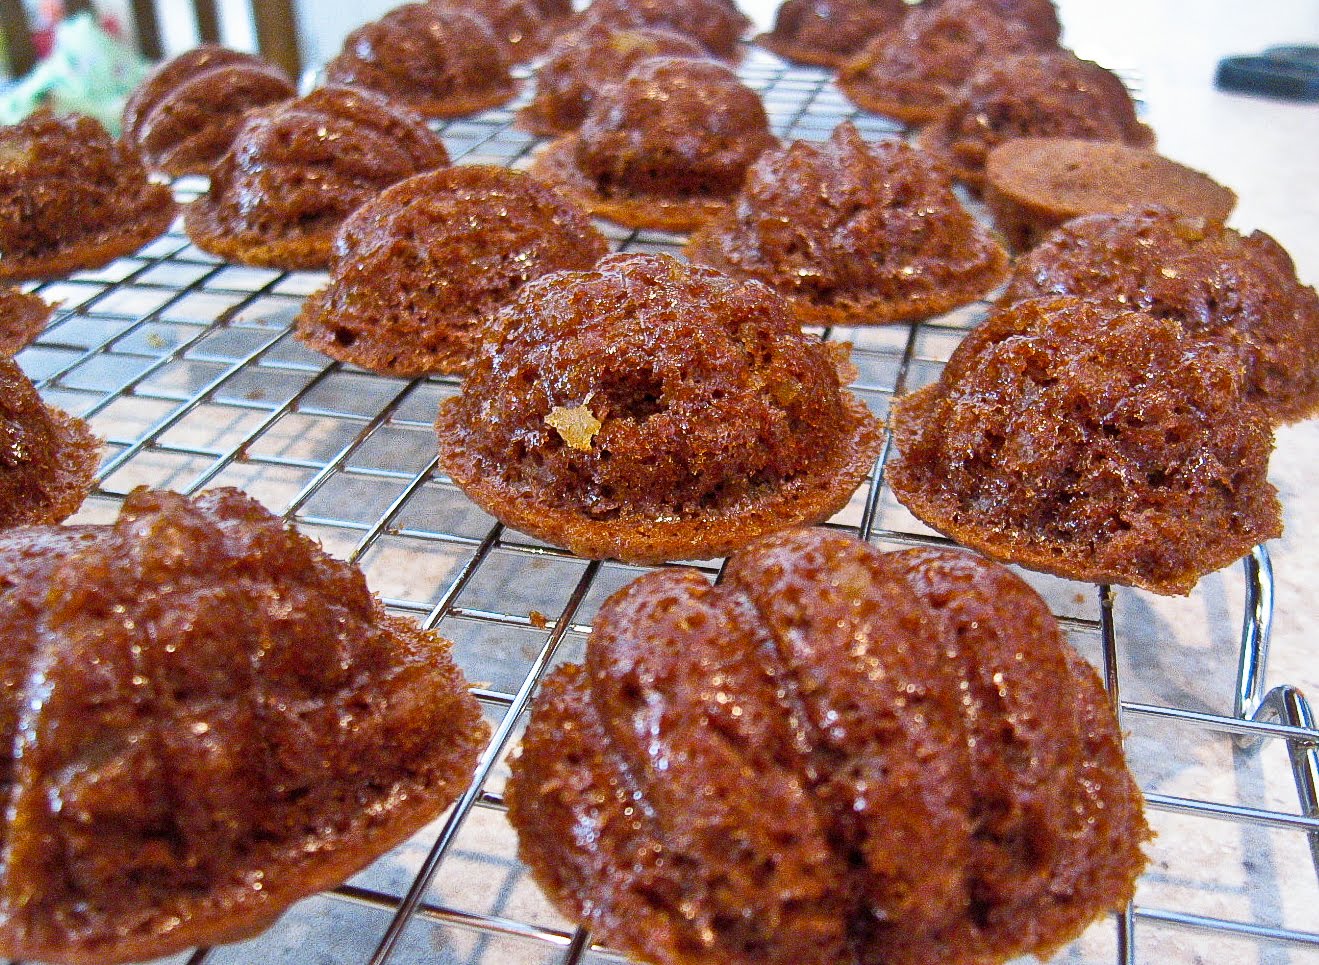 Nordic Ware Gingerbread Man Pan - Baking Bites